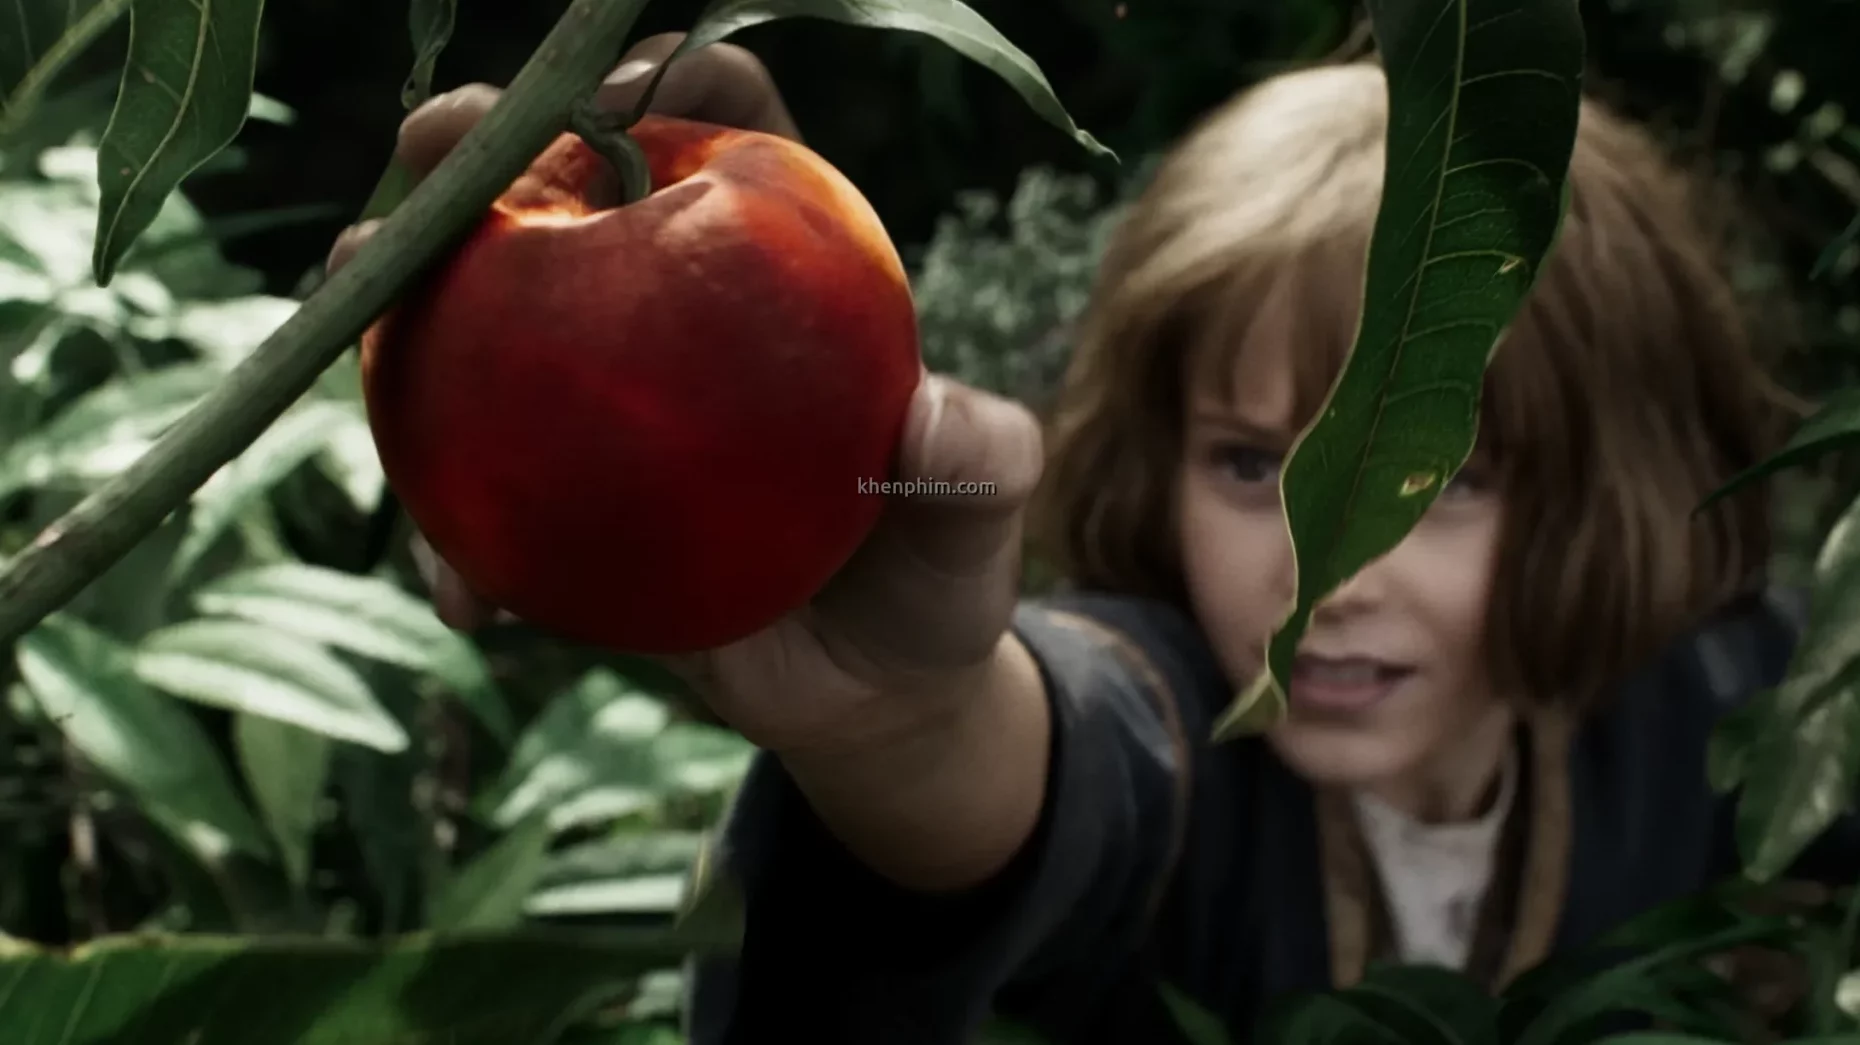 Furiosa lúc nhỏ hái táo. Trái táo này ở đầu phim nhìn ngon, nhưng cuối phim thì khác...